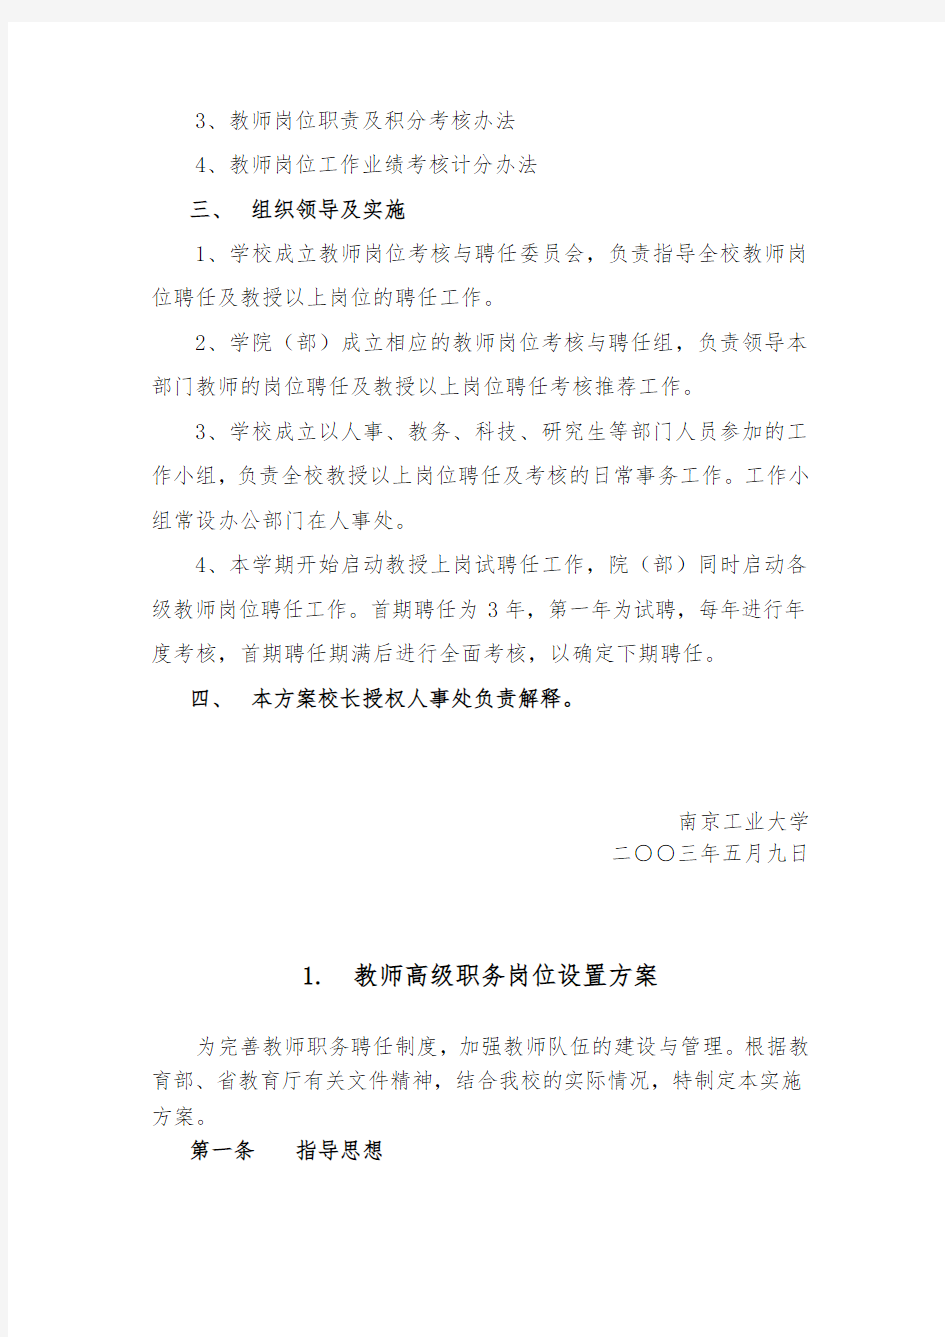 南京工业大学教师岗位聘任与考核试行方案